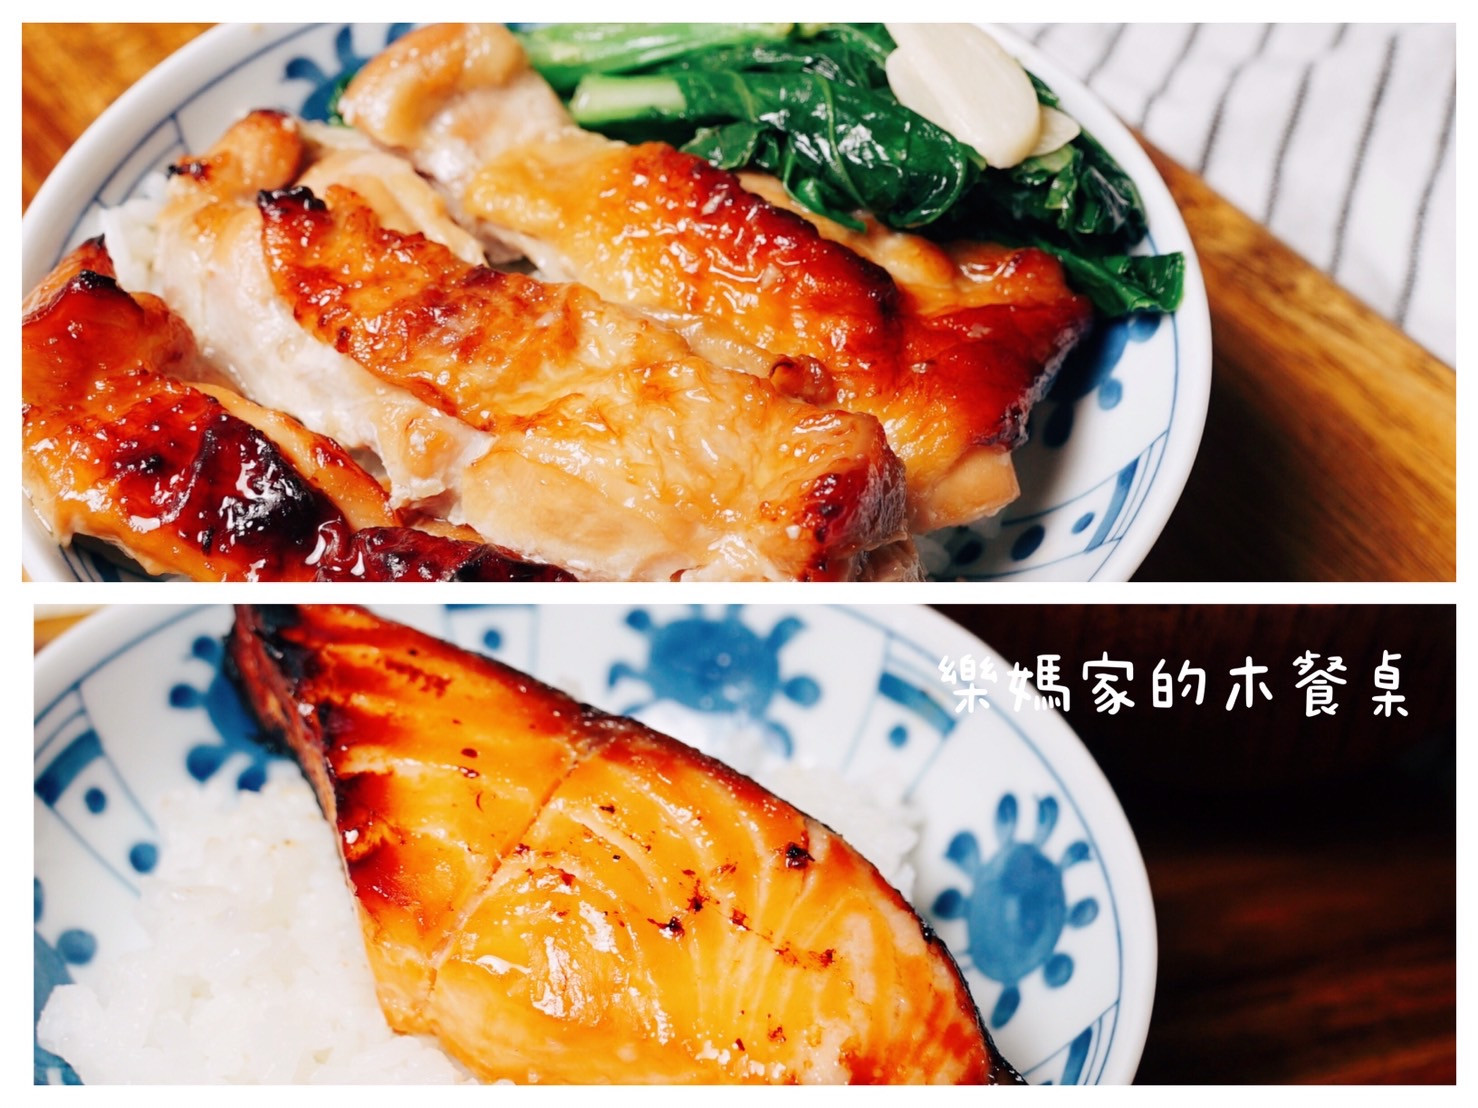 肉類保存照燒雞腿 西京燒 牛丼 醬汁燒肉